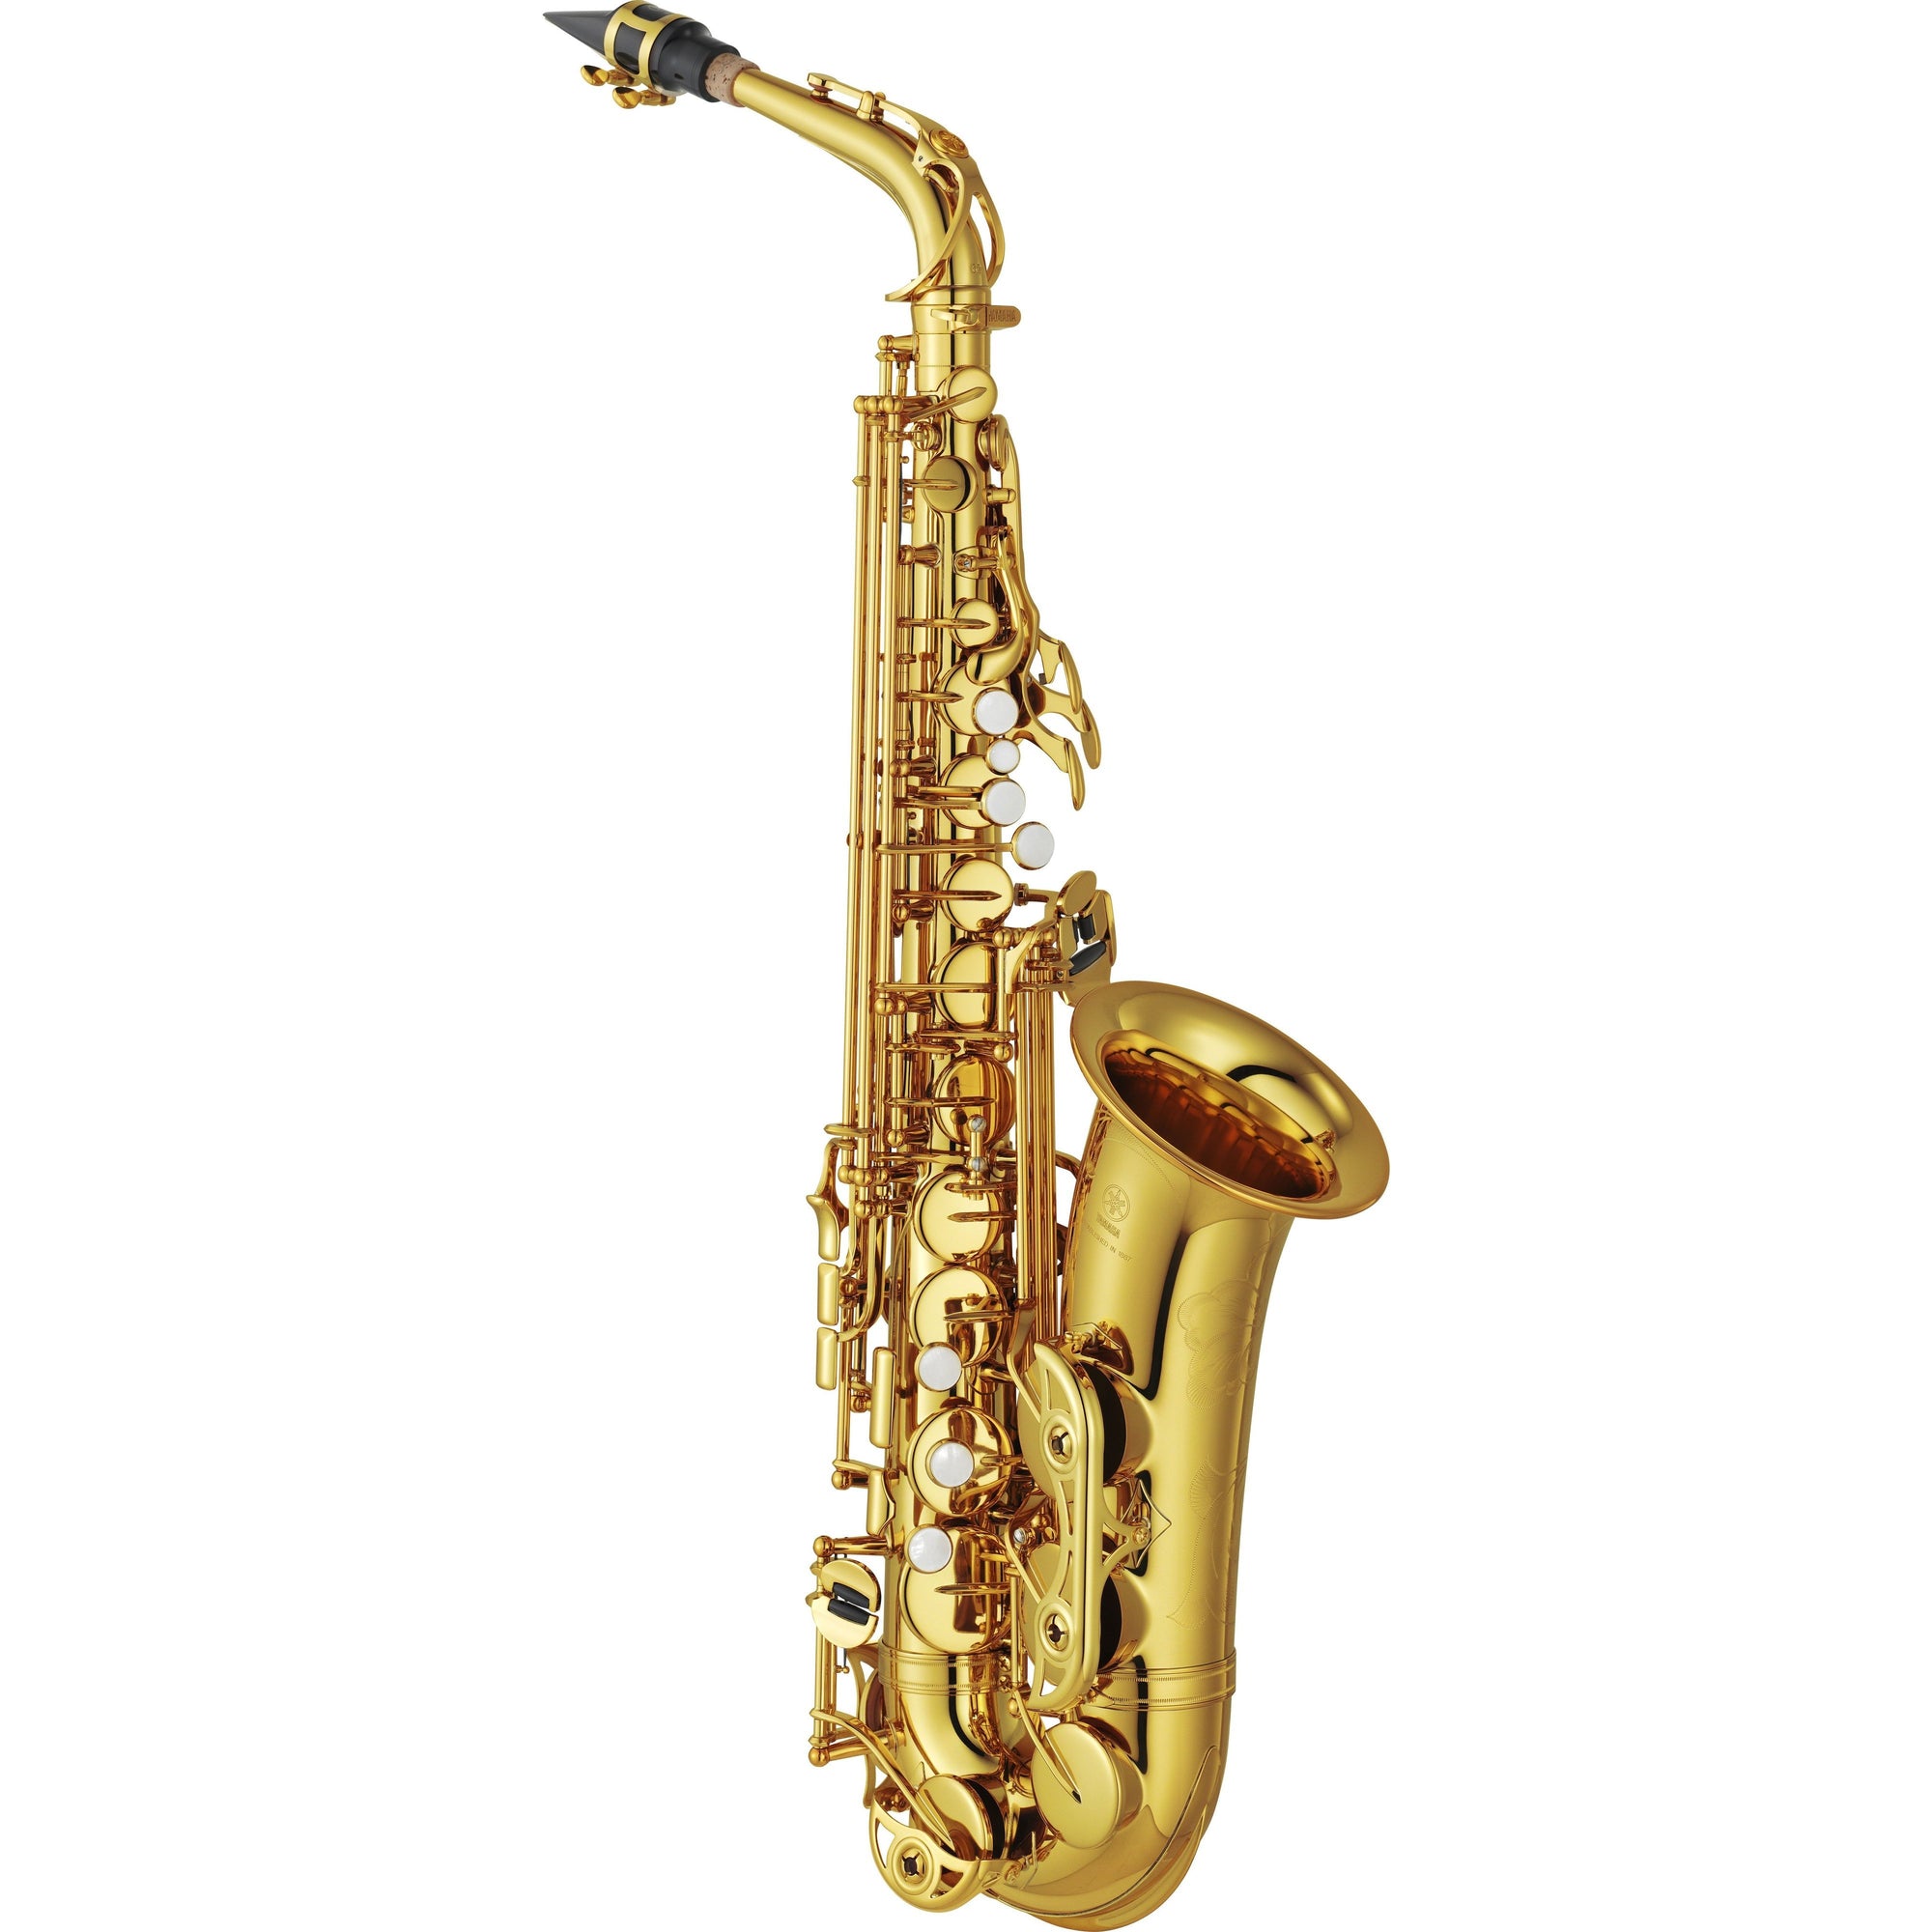 Yamaha - YAS-62 - Professional Alto Saxophone-Saxophone-Yamaha-Music Elements